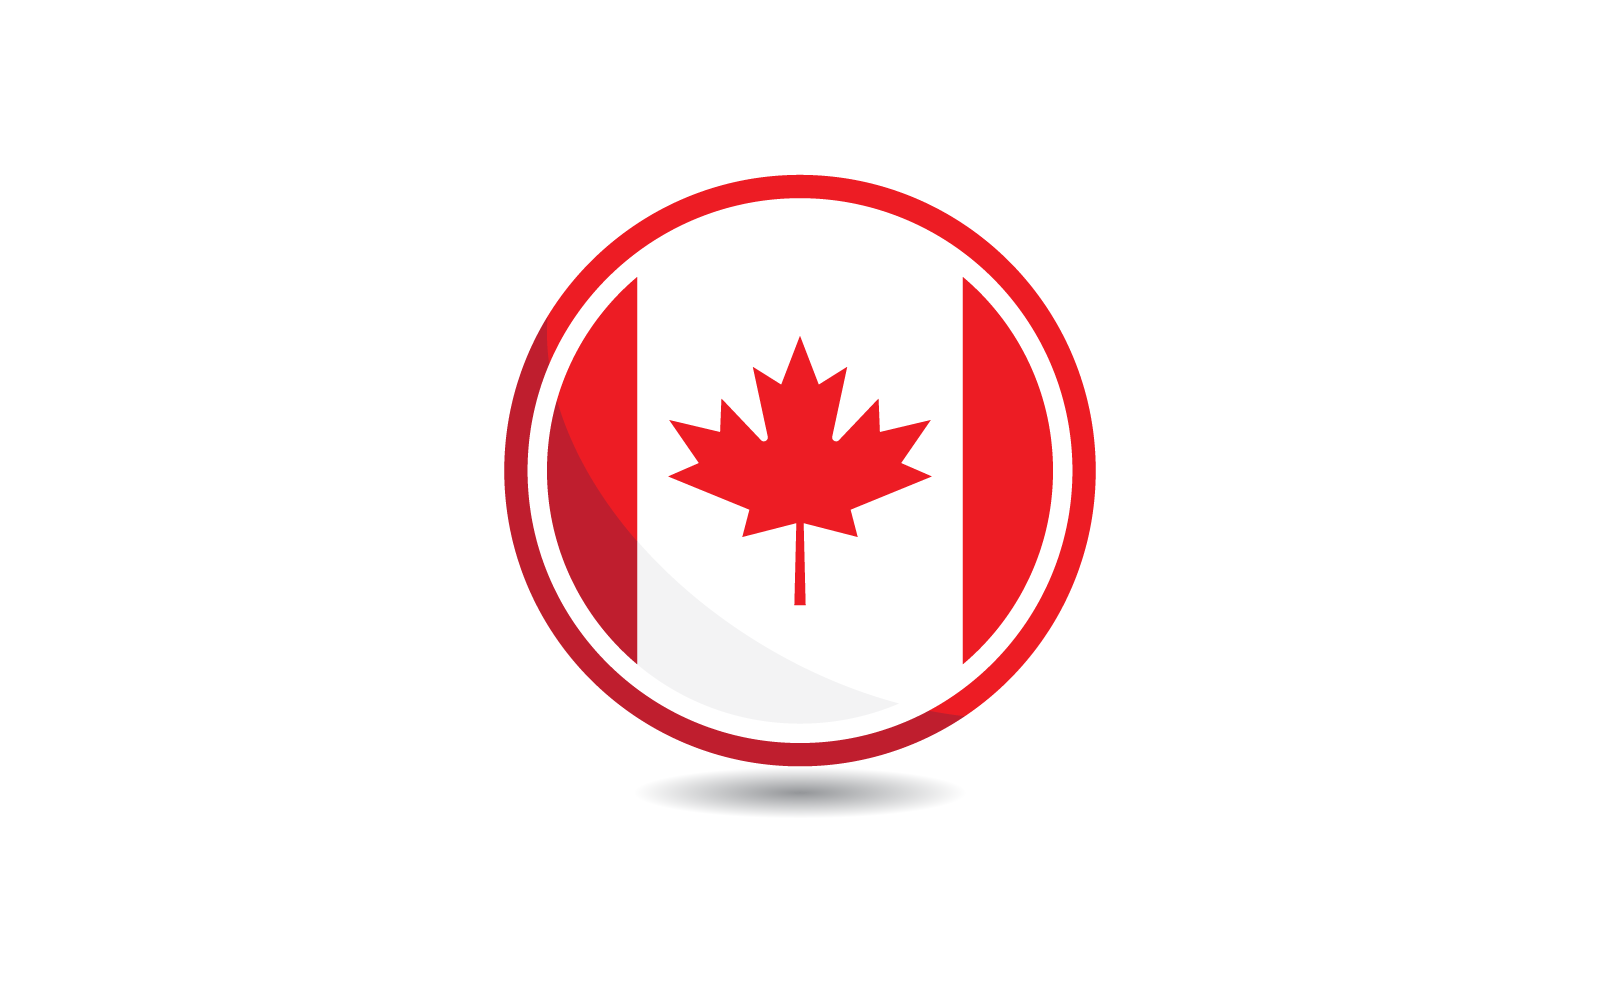 Flacher Designvektor der Kanada-Flaggenillustration